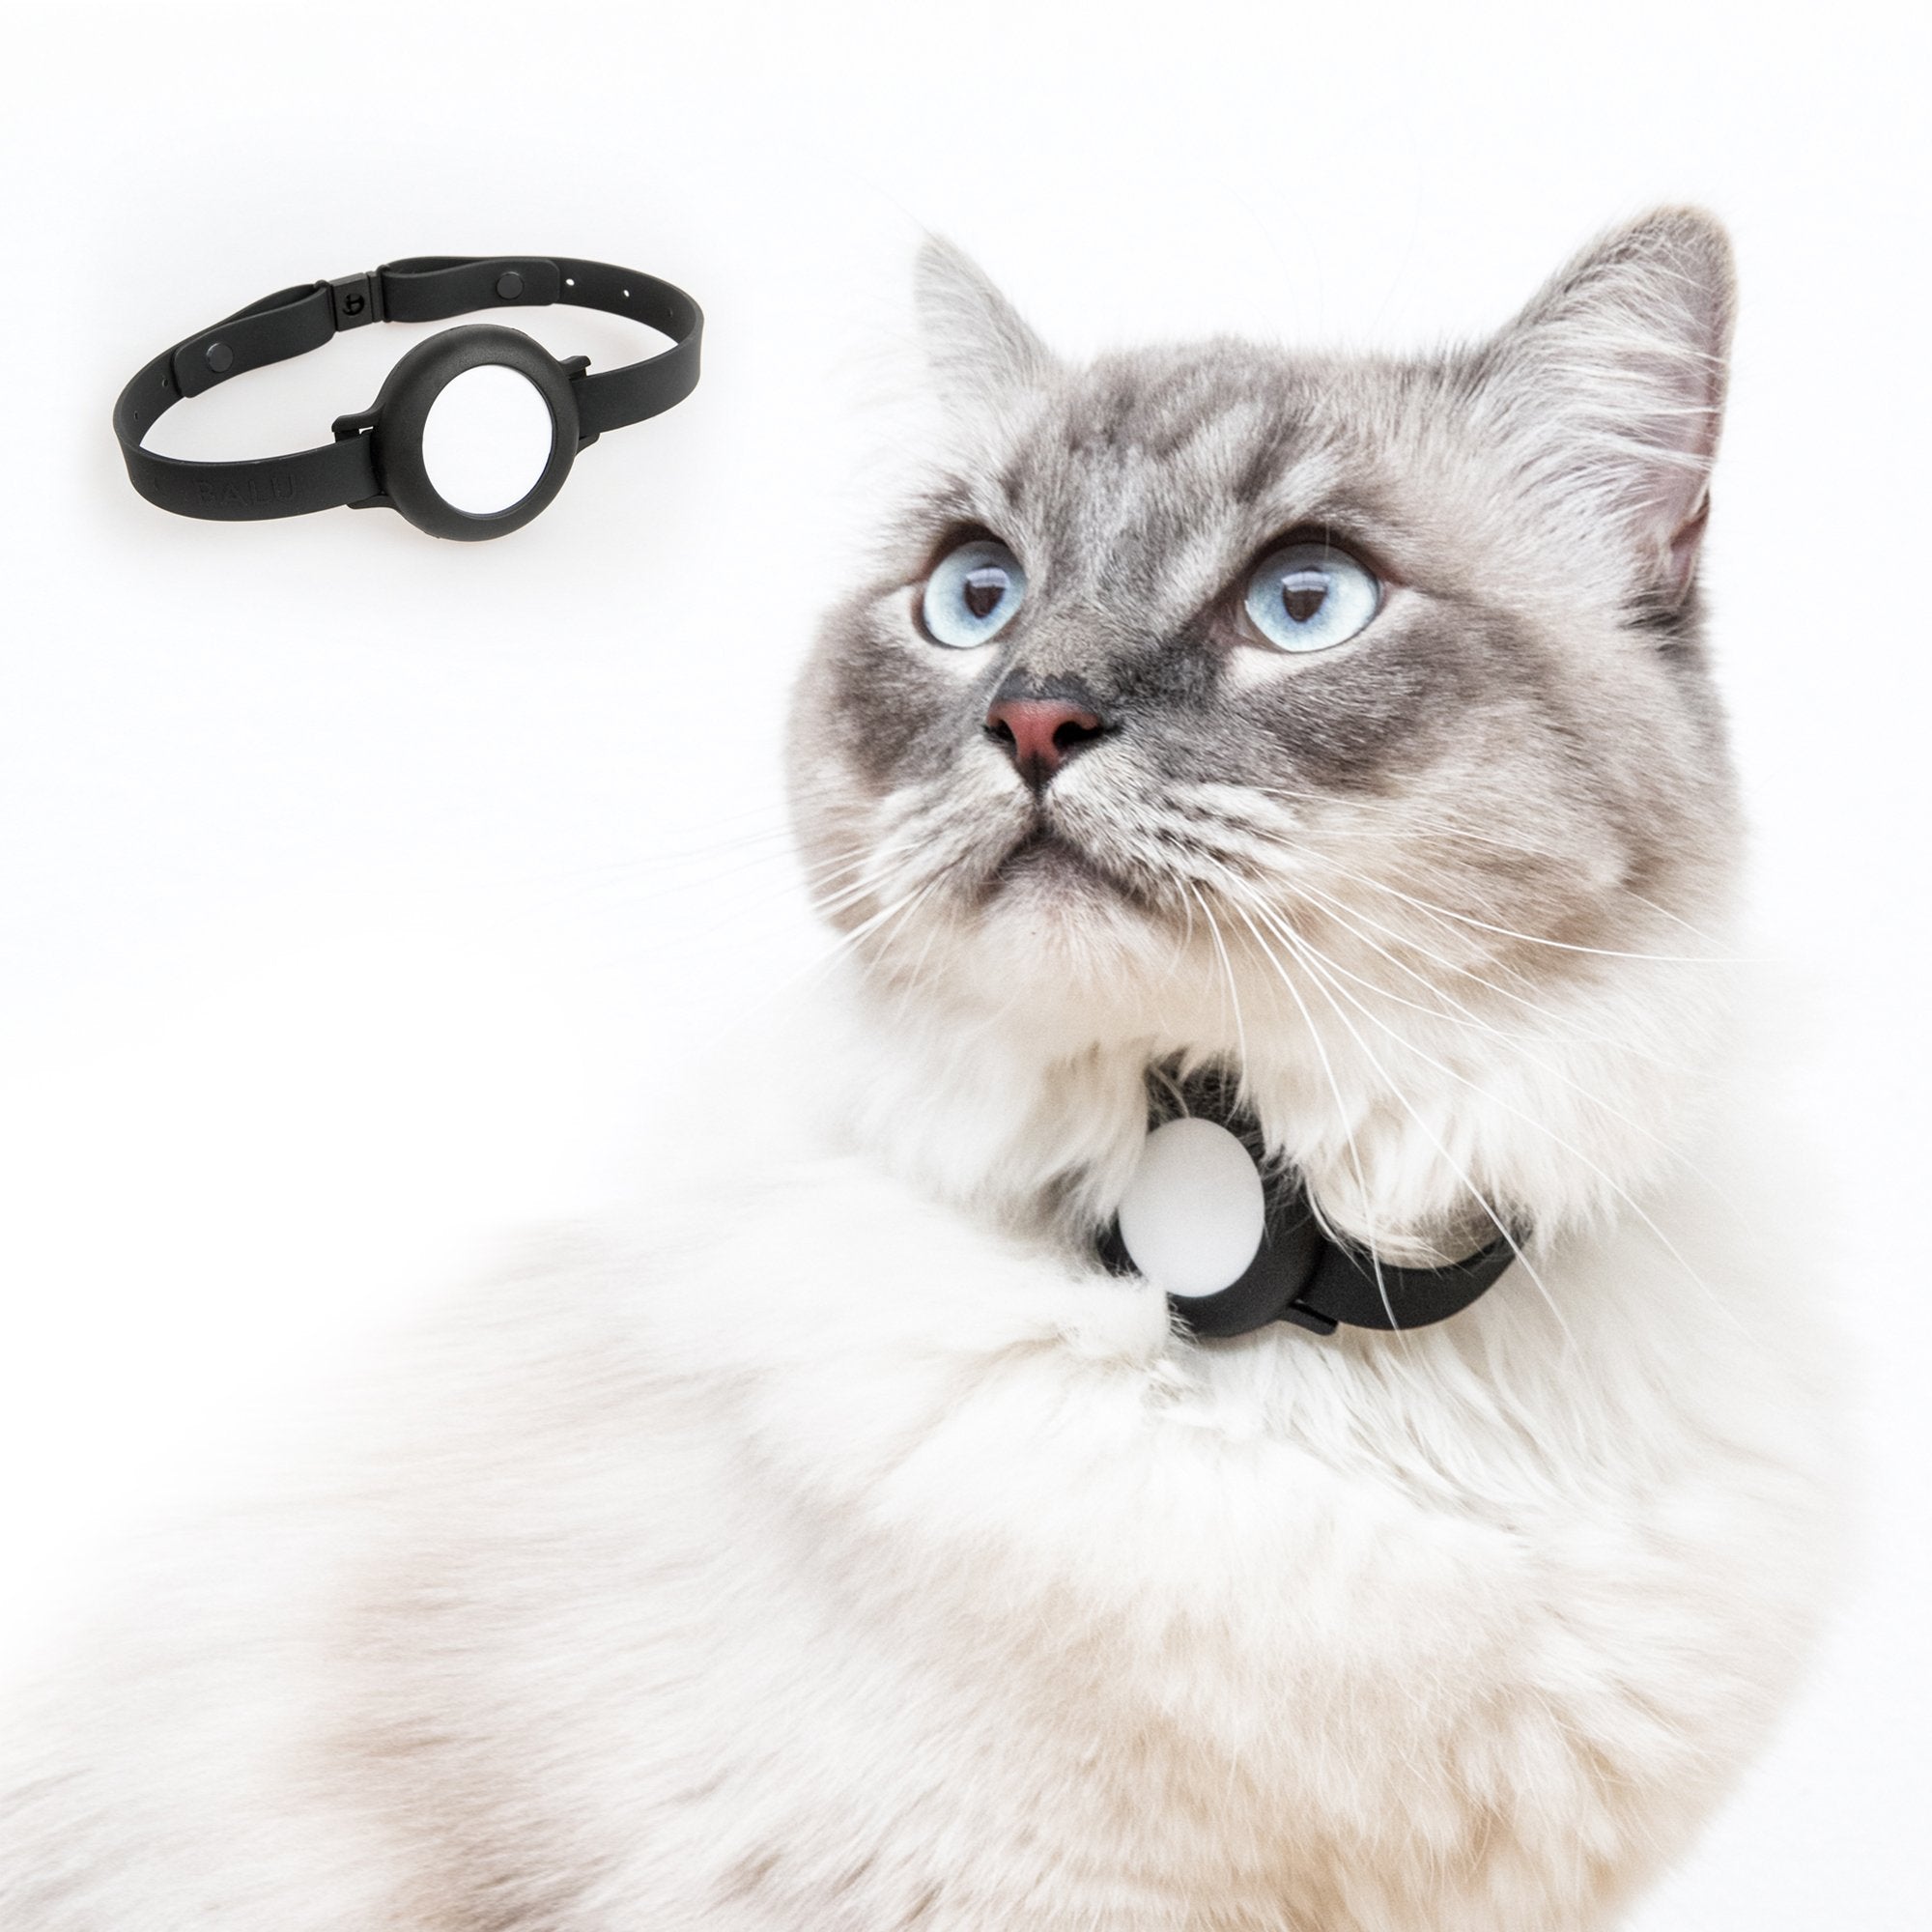 Croc-Cat® Collier Chat, Accessoire Compatible avec airtag Apple